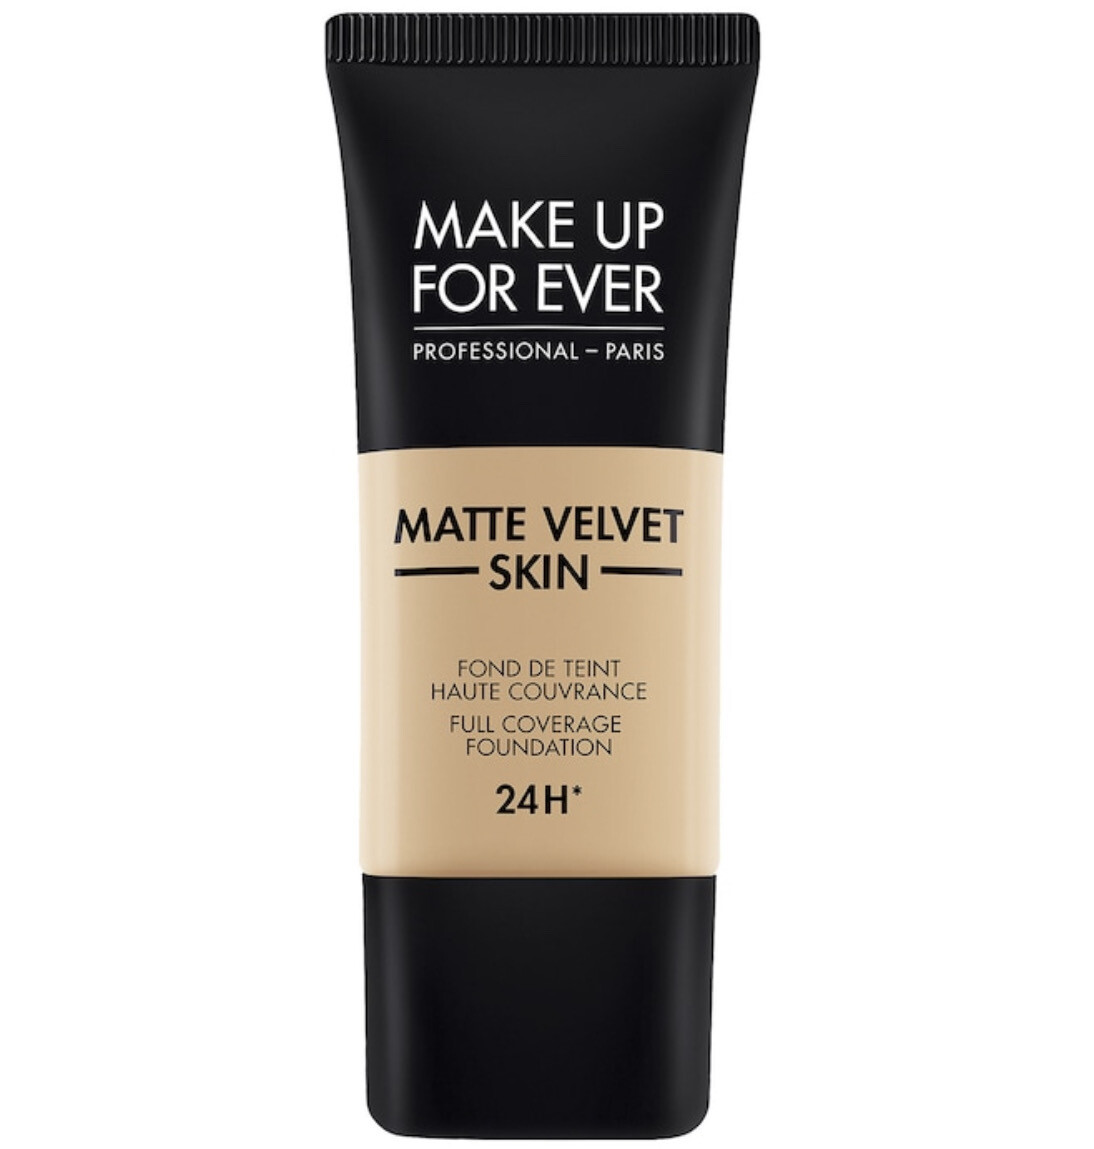 Make Up For Ever - Matte Velvet Skin Full Coverage Foundation | Y335 Dark Sand - for lighter medium skin with golden-peach undertones